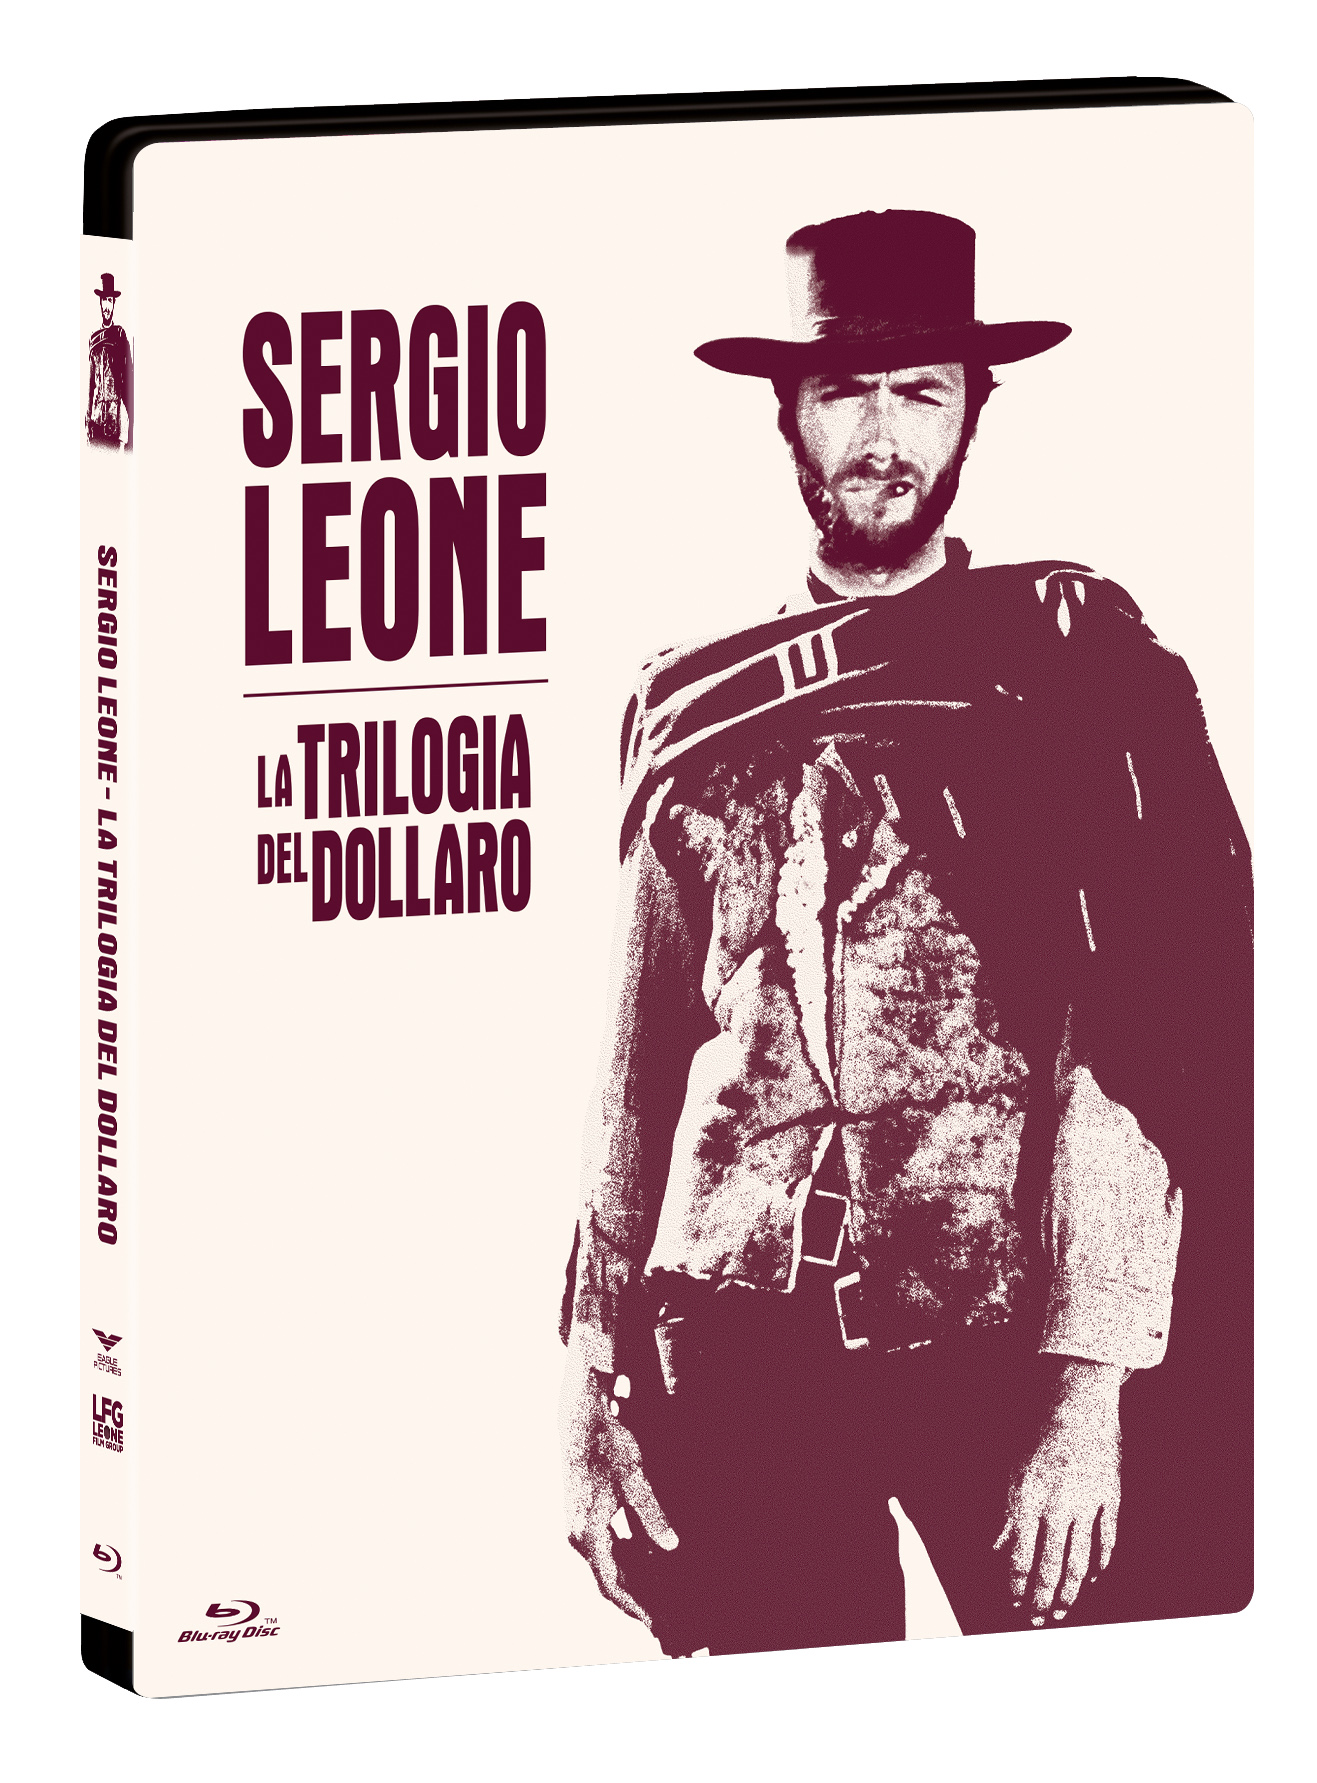 Blu-Ray Sergio Leone - La Trilogia Del Dollaro (3 Blu-Ray+Booklet) (Steelbook) NUOVO SIGILLATO, EDIZIONE DEL 07/12/2022 SUBITO DISPONIBILE